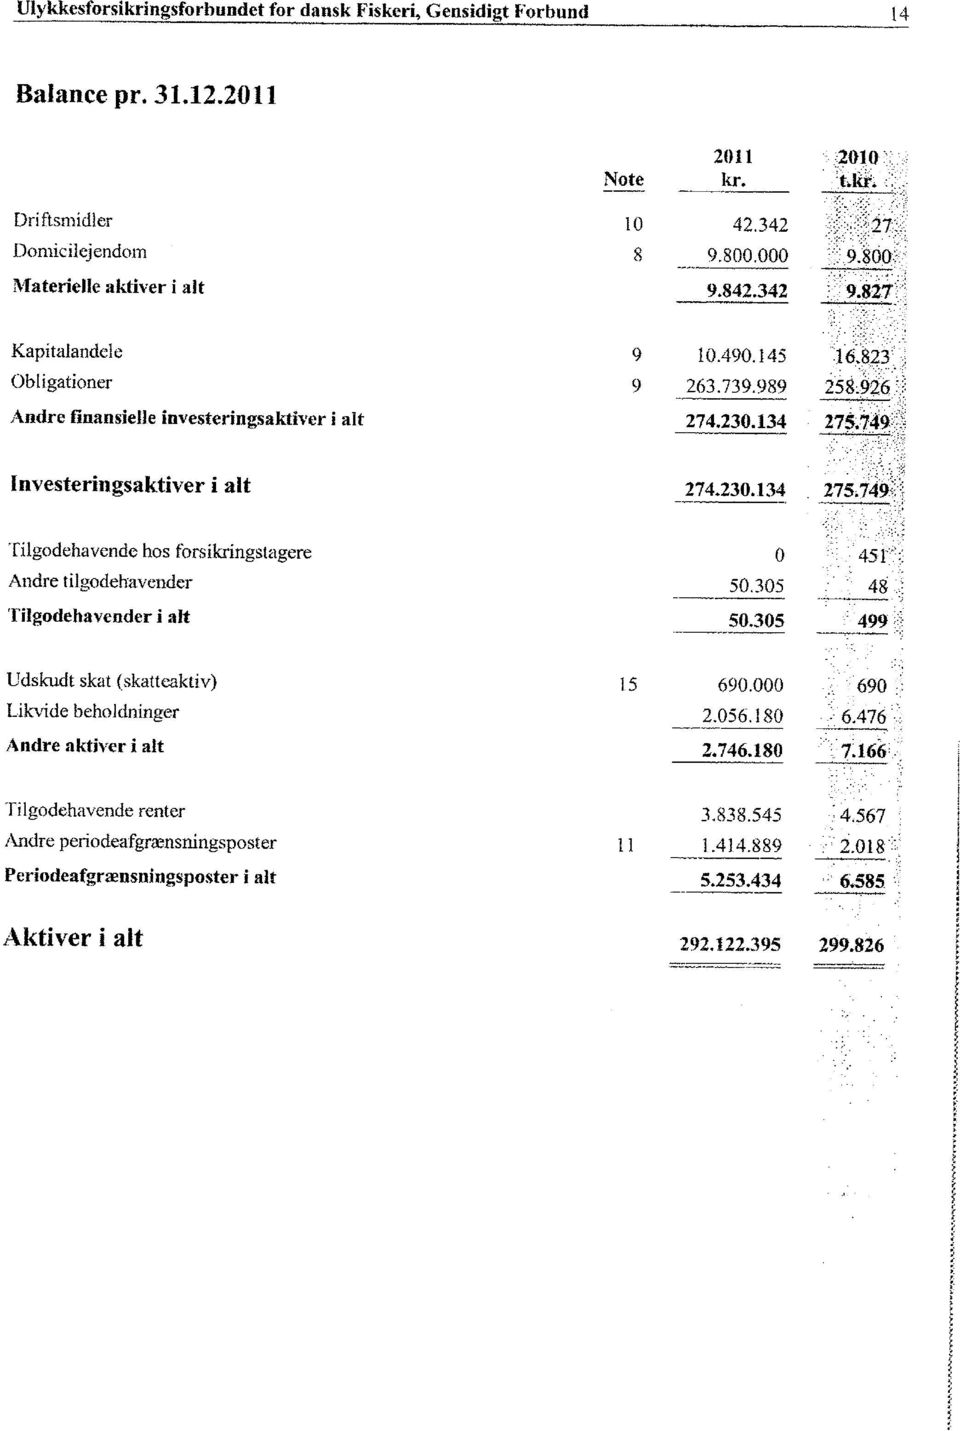 749 Investeringsaktiver i alt 274.230.134 275.749 Tilgodehavende hos fors ikringstagere 0 451 Andre tilgodehavender -~ 50.305 48 Tilgodehavender i alt 50.305 499 Udskudt skat (skatteaktiv) 15 690.